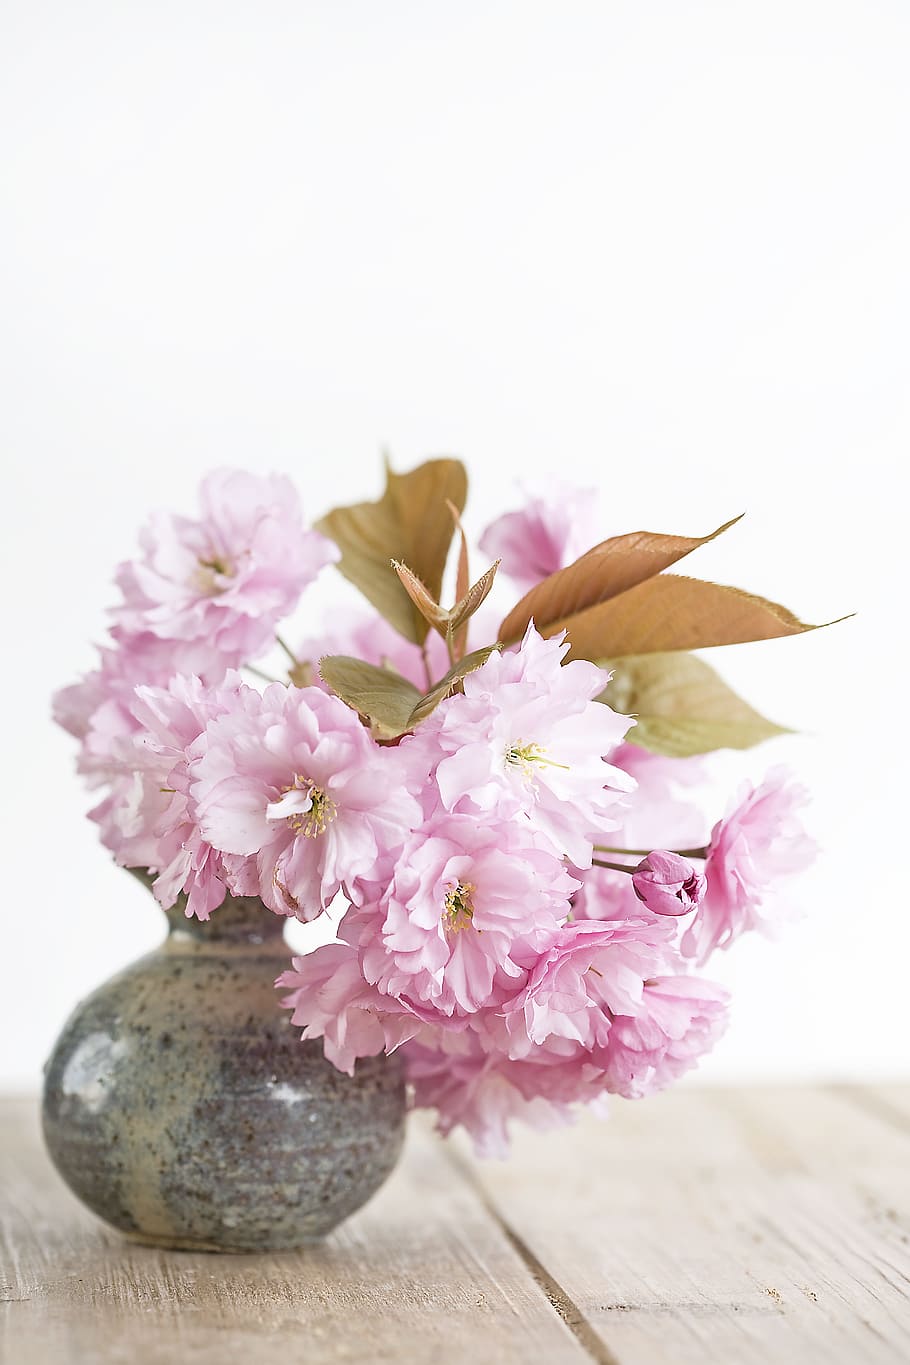 rosa, flores de pétalos, gris y marrón, cerámica, florero, flores, flor, planta floreciendo, color rosado, planta